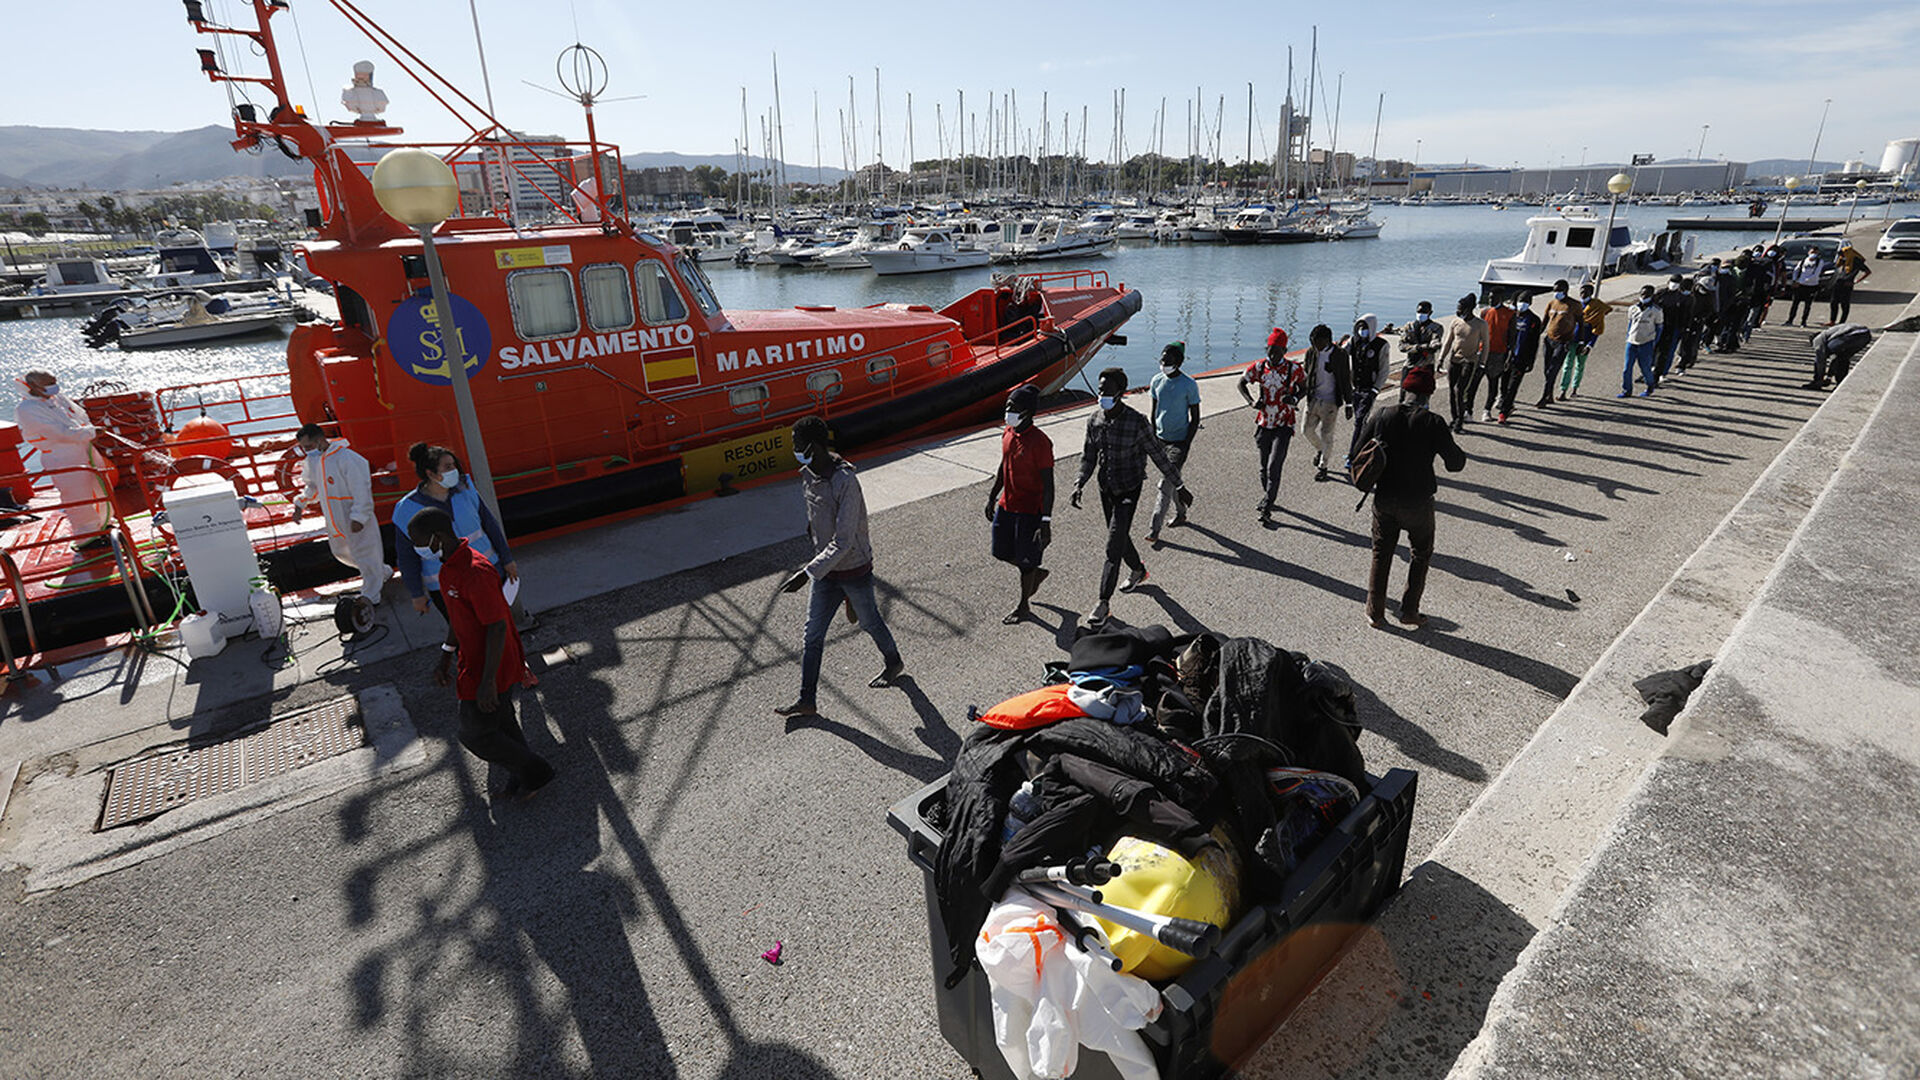 Las fotos de los migrantes rescatados en aguas del estrecho